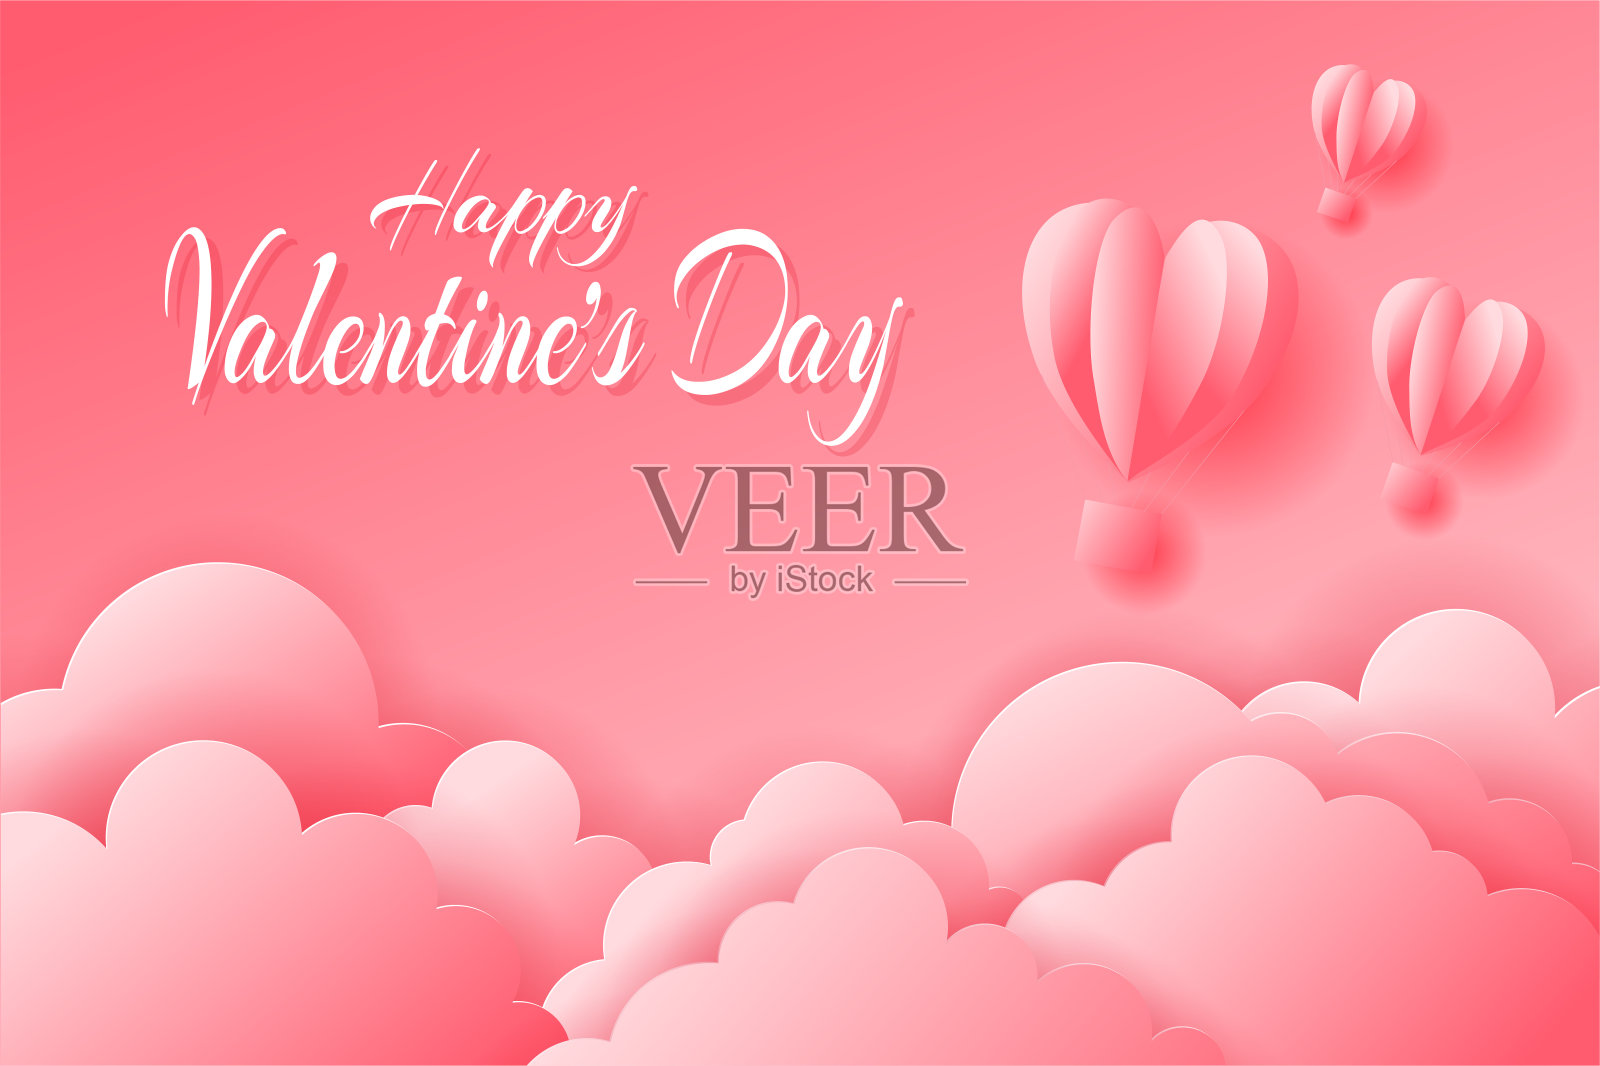 粉红色的心形气球在粉红色背景的云朵上飞行。剪纸风格。情人节或母亲节庆祝概念插画图片素材